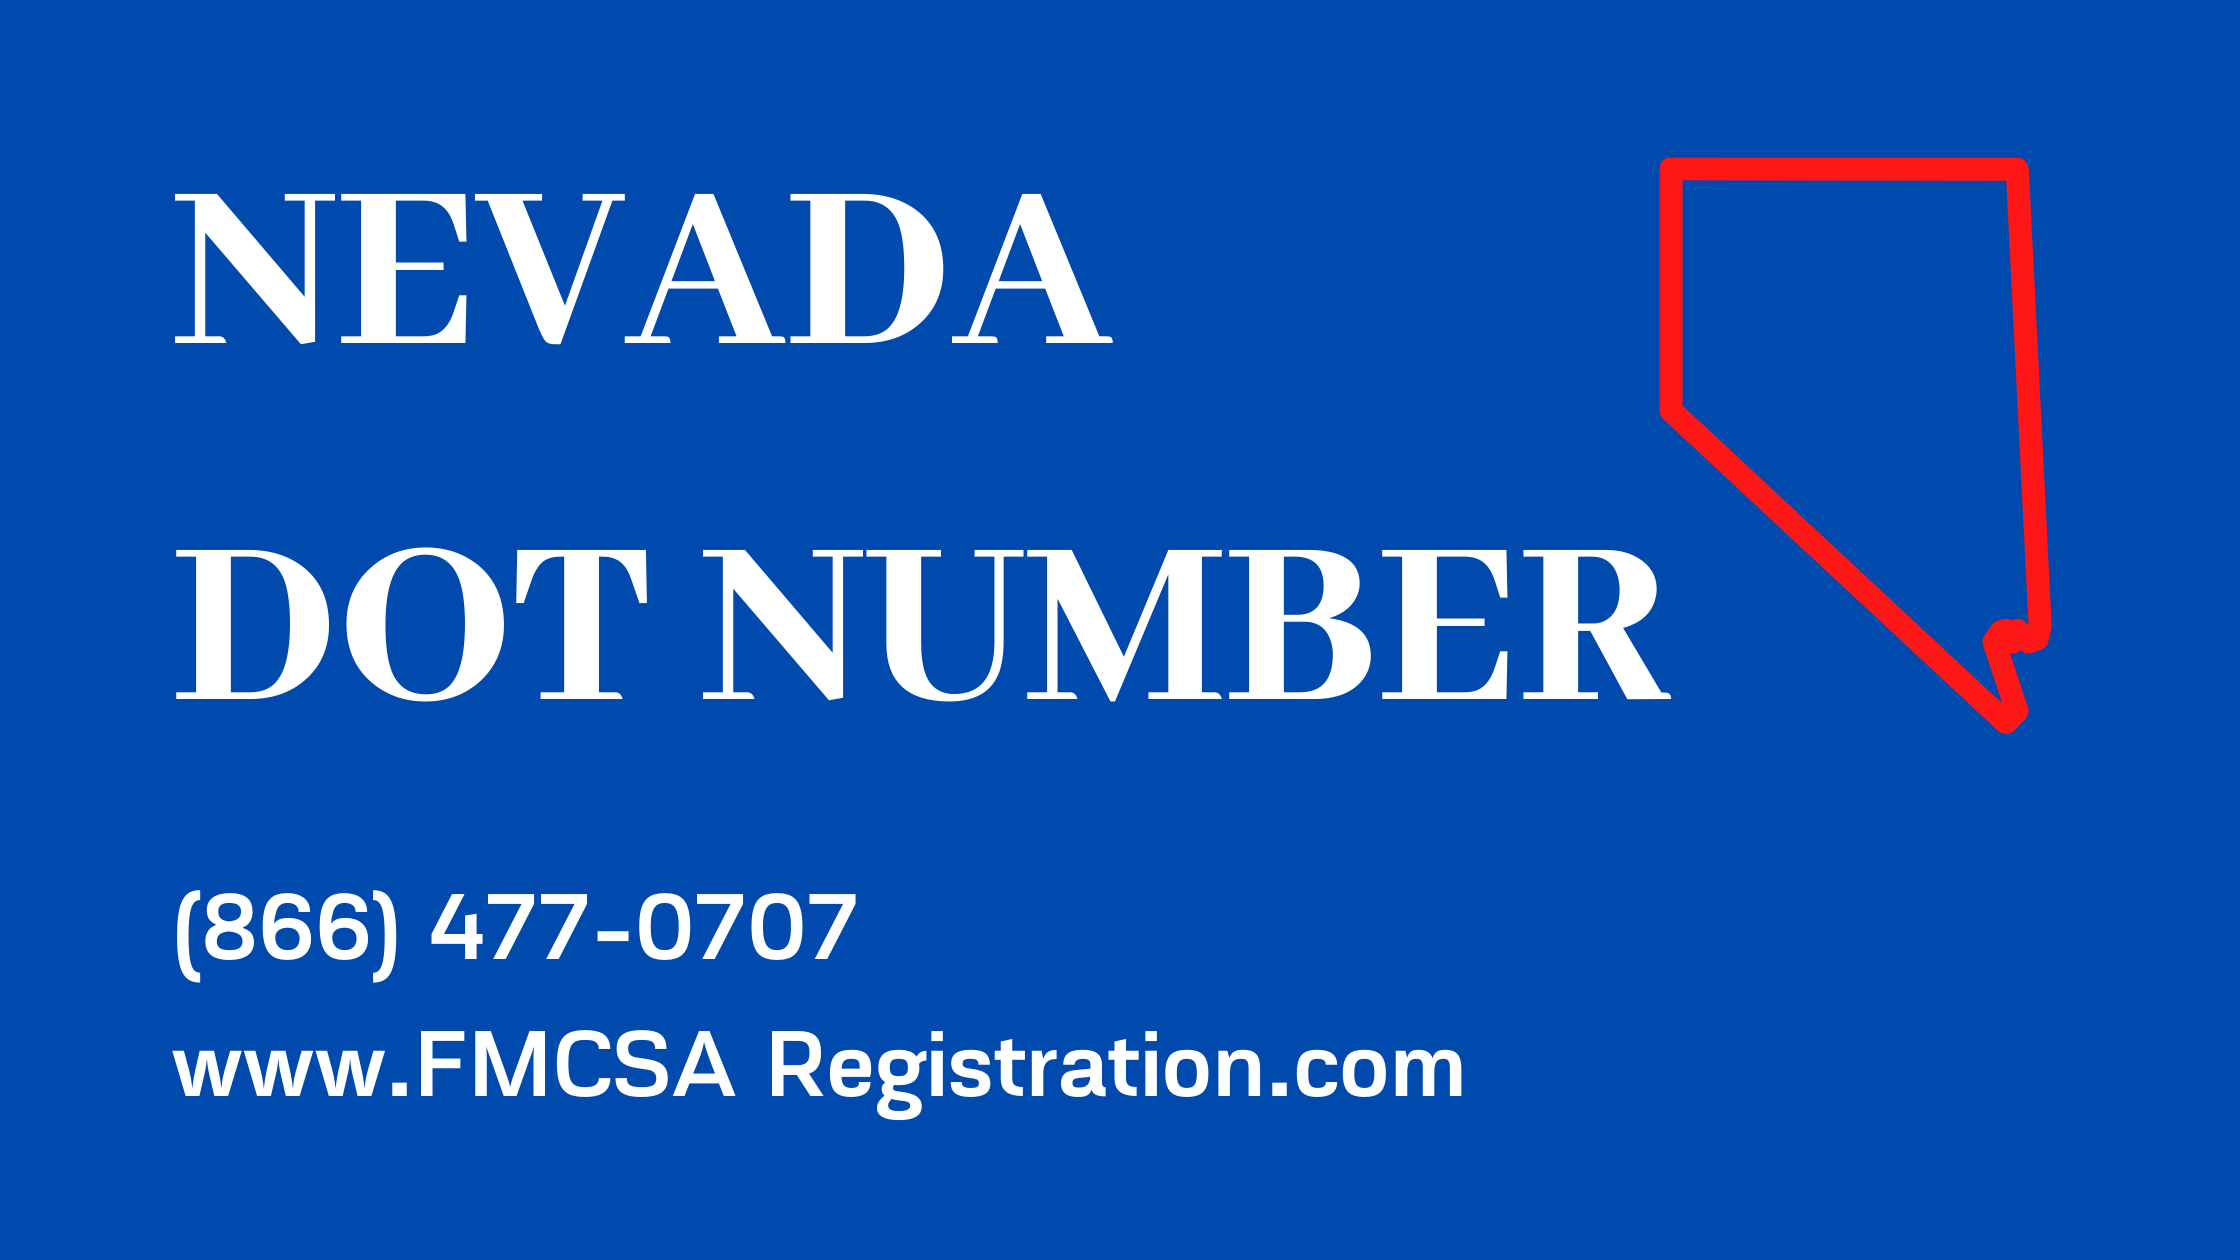 Nevada DOT Number